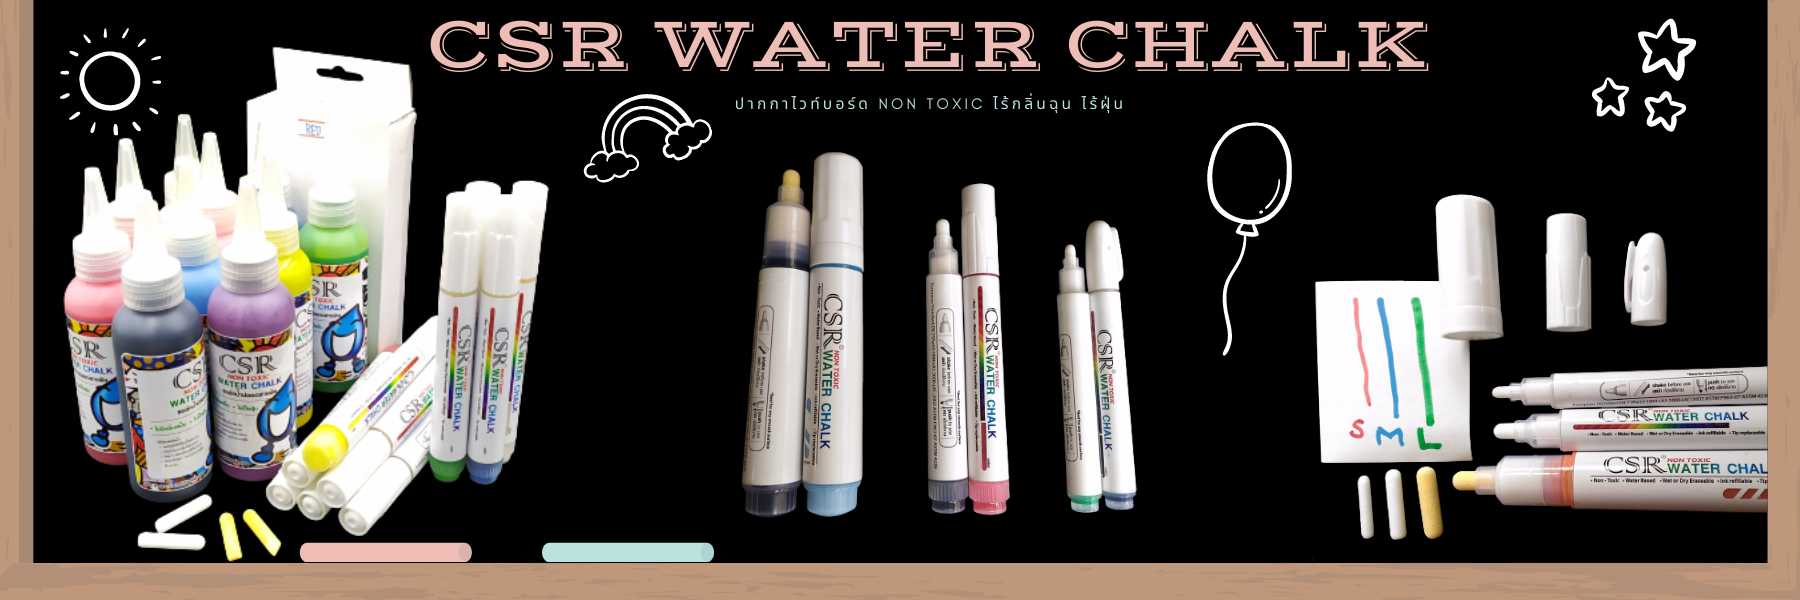 ปากกา CSR Water Chalk | Whiteboard Marker, ชอล์คน้ำ, ปากกาไวท์บอร์ด - Non toxic ไร้กลิ่นฉุน ไร้ฝุ่น เติมหมึกได้ เปลี่ยนหัวได้